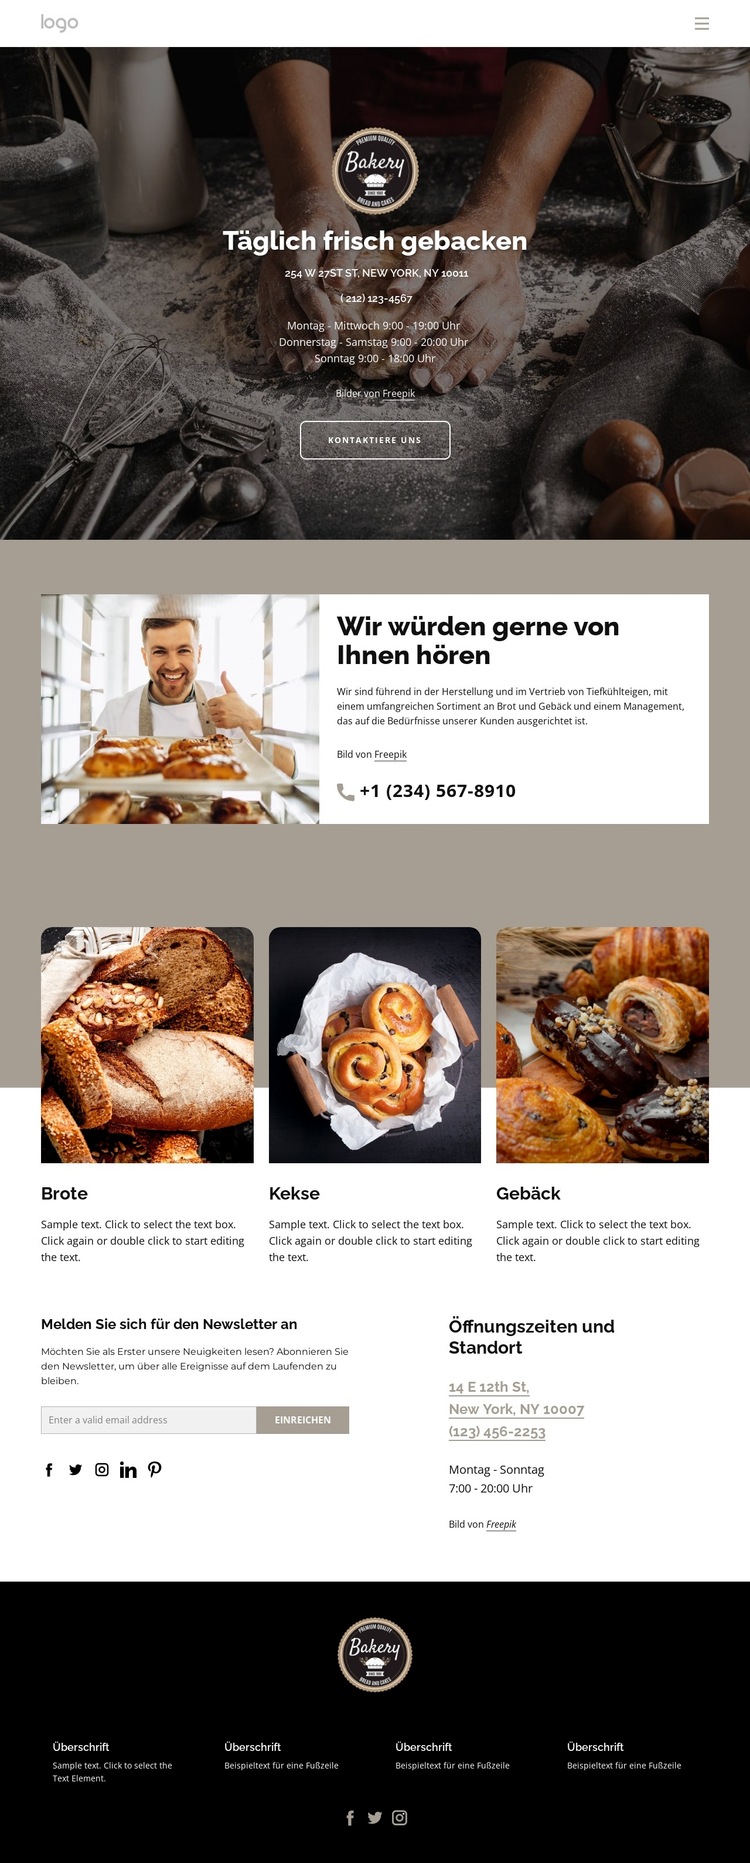 Täglich frisches Brot gebacken Website-Vorlage